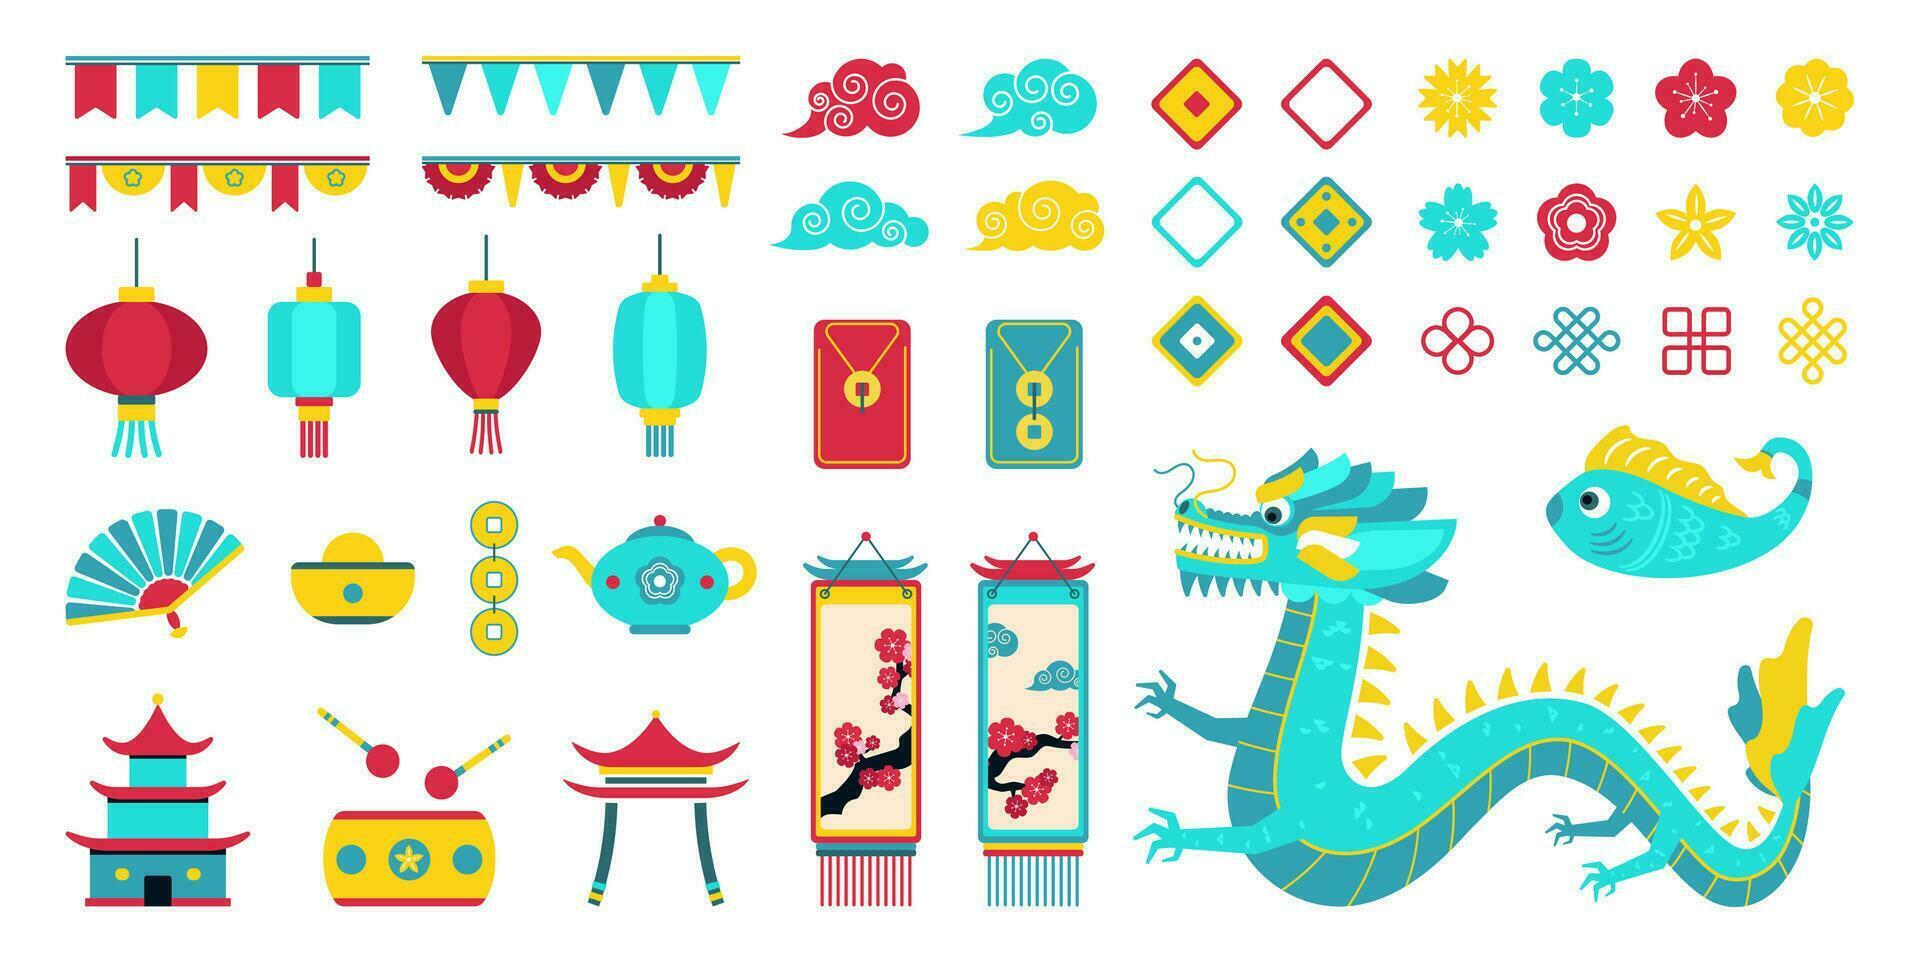 asiatisk ny år design element, uppsättning av platt ritningar med kinesisk ny år symboler, dekorativ orientalisk modern konst med drake, asiatisk lyktor, blomma blomma, gobelänger, mynt. vektor illustration.